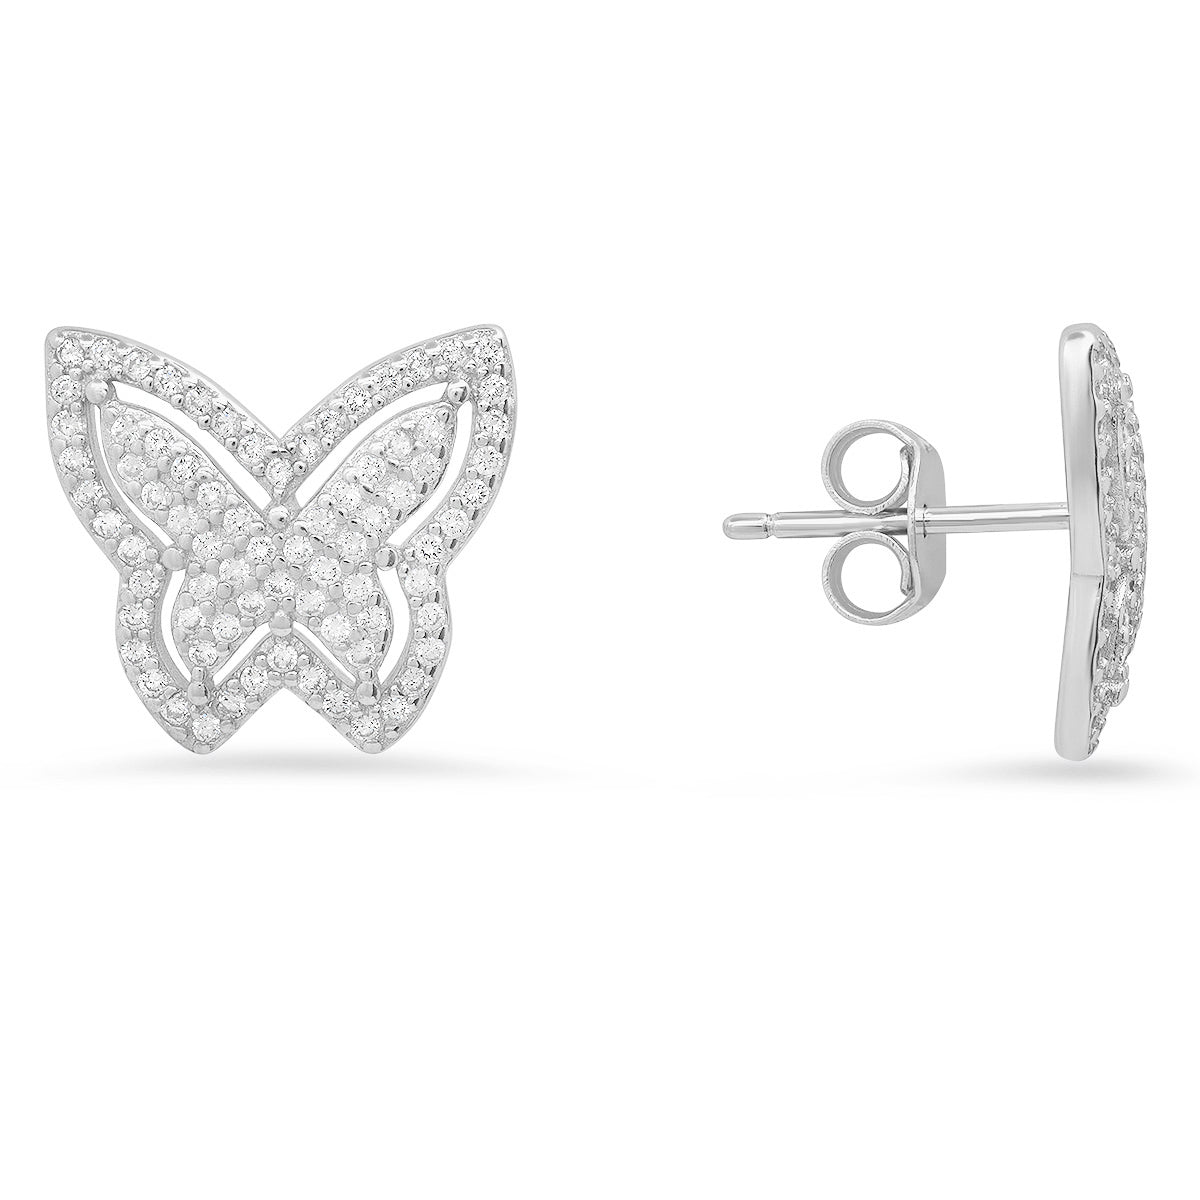 Kylie Harper Women's Pave Butterfly Diamond Cz Stud Earrings In Sterling Silver